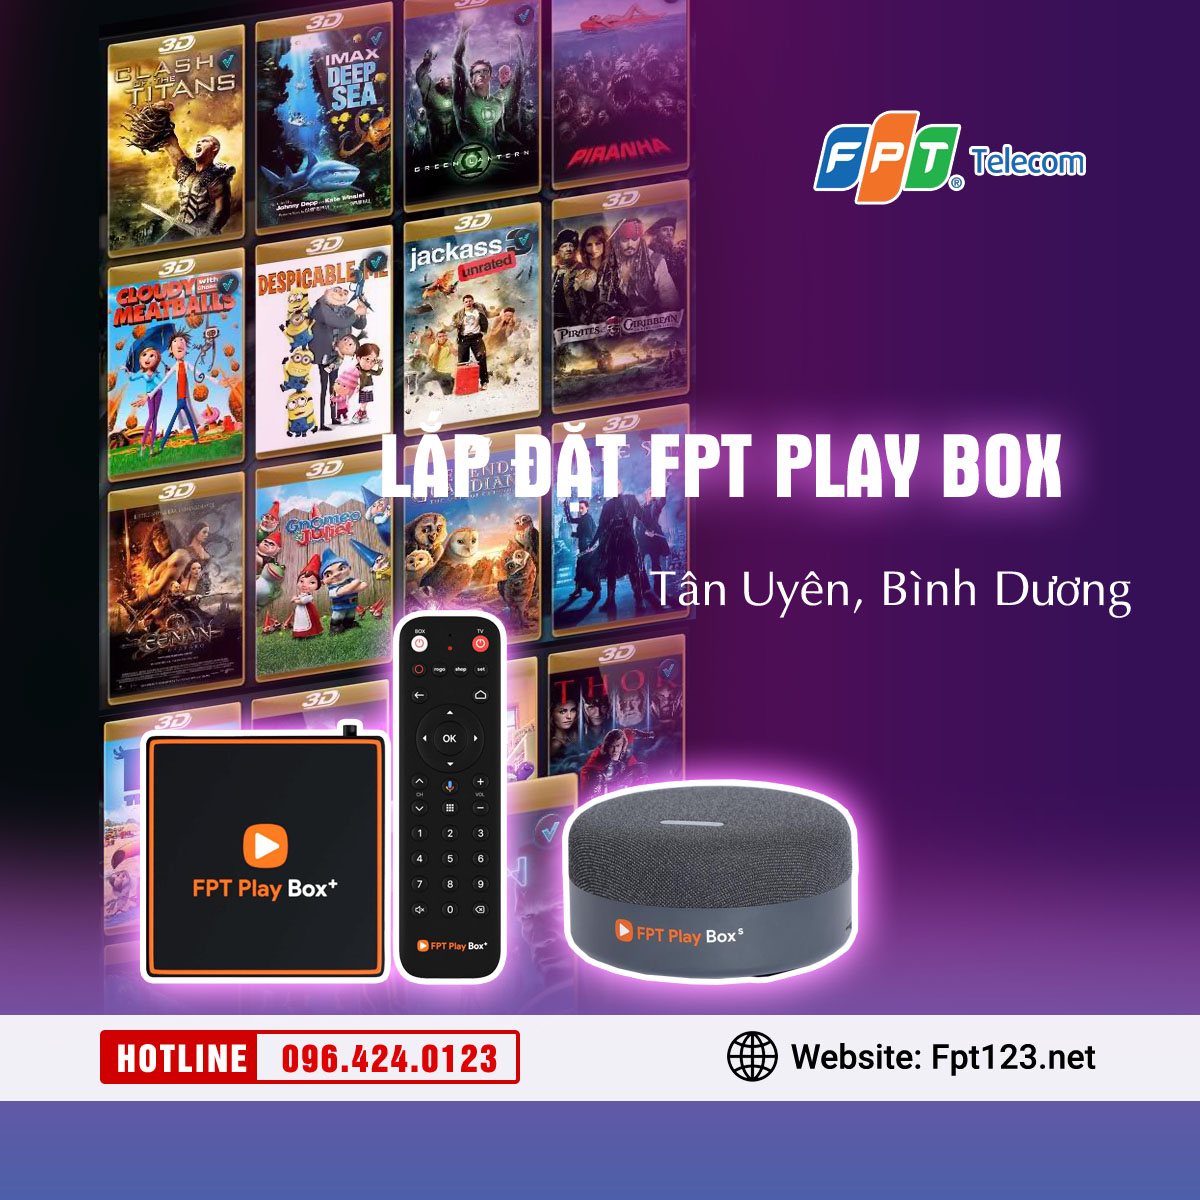 Lắp đặt FPT Play Box tại Tân Uyên, Bình Dương